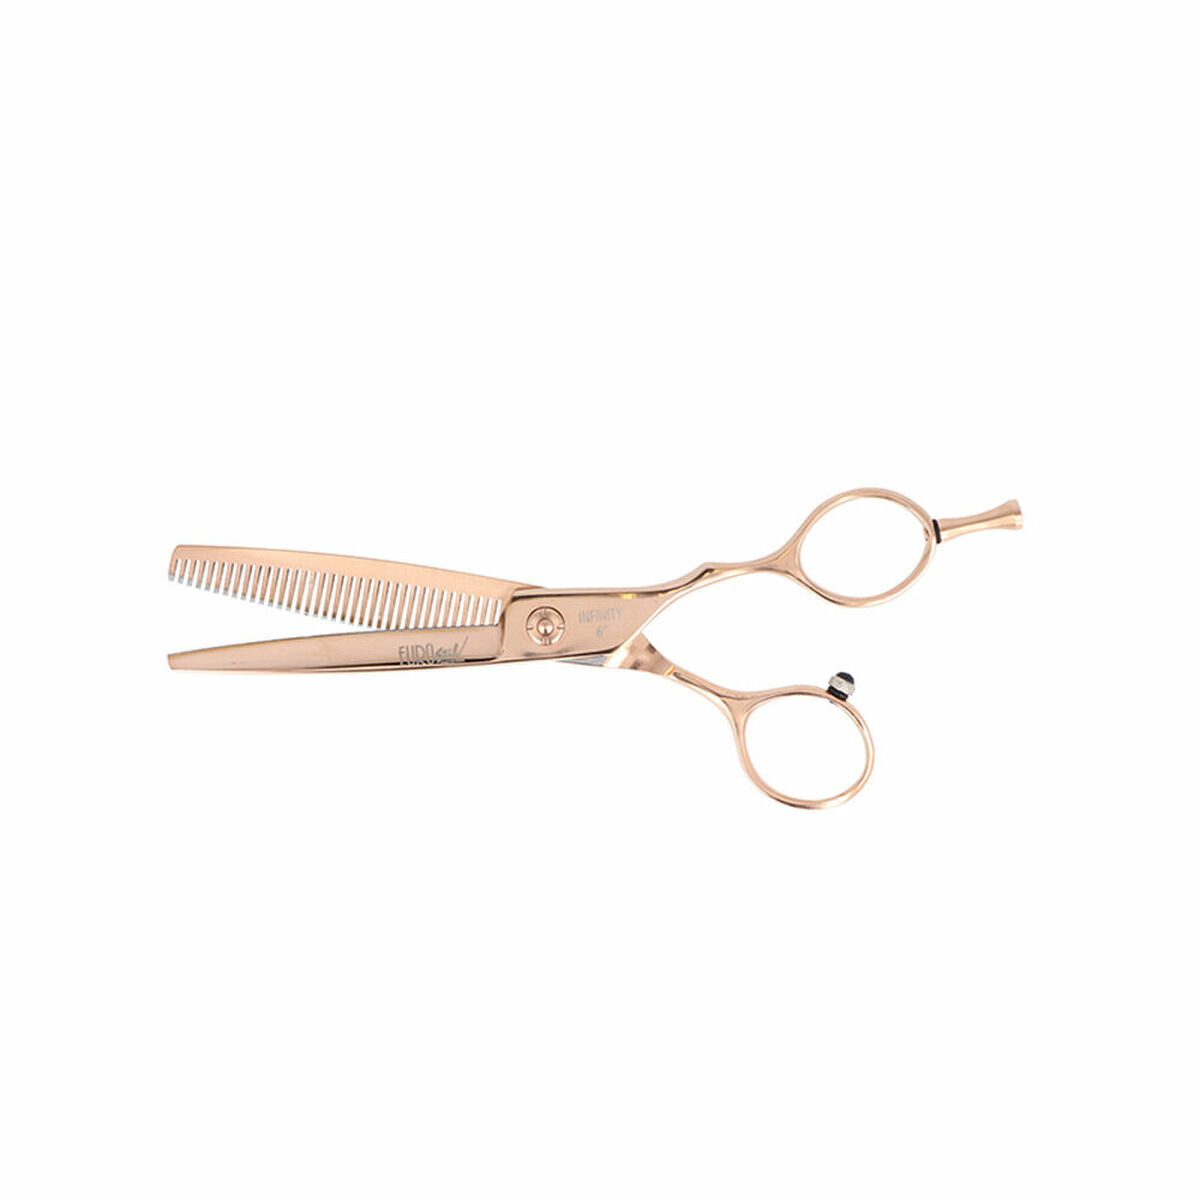 Hair scissors Eurostil ESCULPIR 6.0" 6.0"